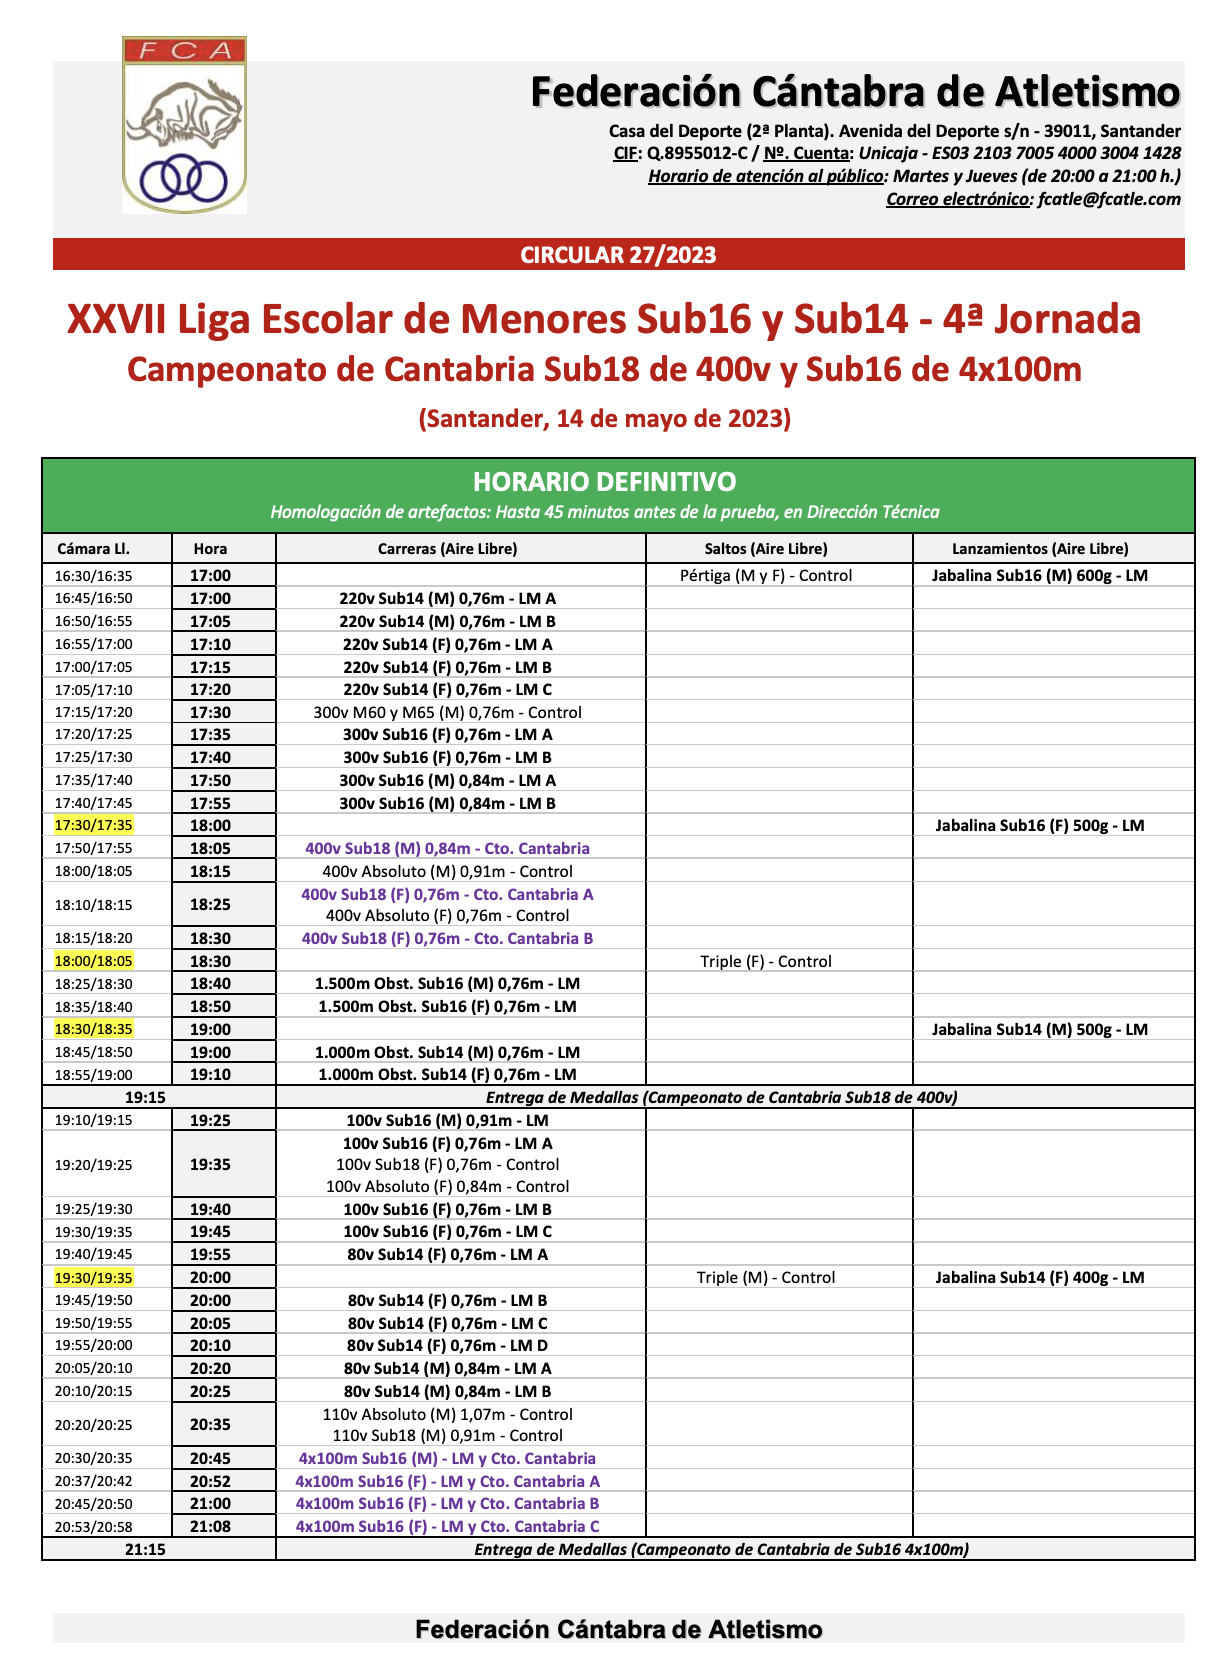 XXVII Liga Escolar de Menores Sub16 y Sub14 - 4ª Jornada / Campeonato de Cantabria Sub18 de 400v y Sub16 de 4x100 metros @ Santander, Cantabria